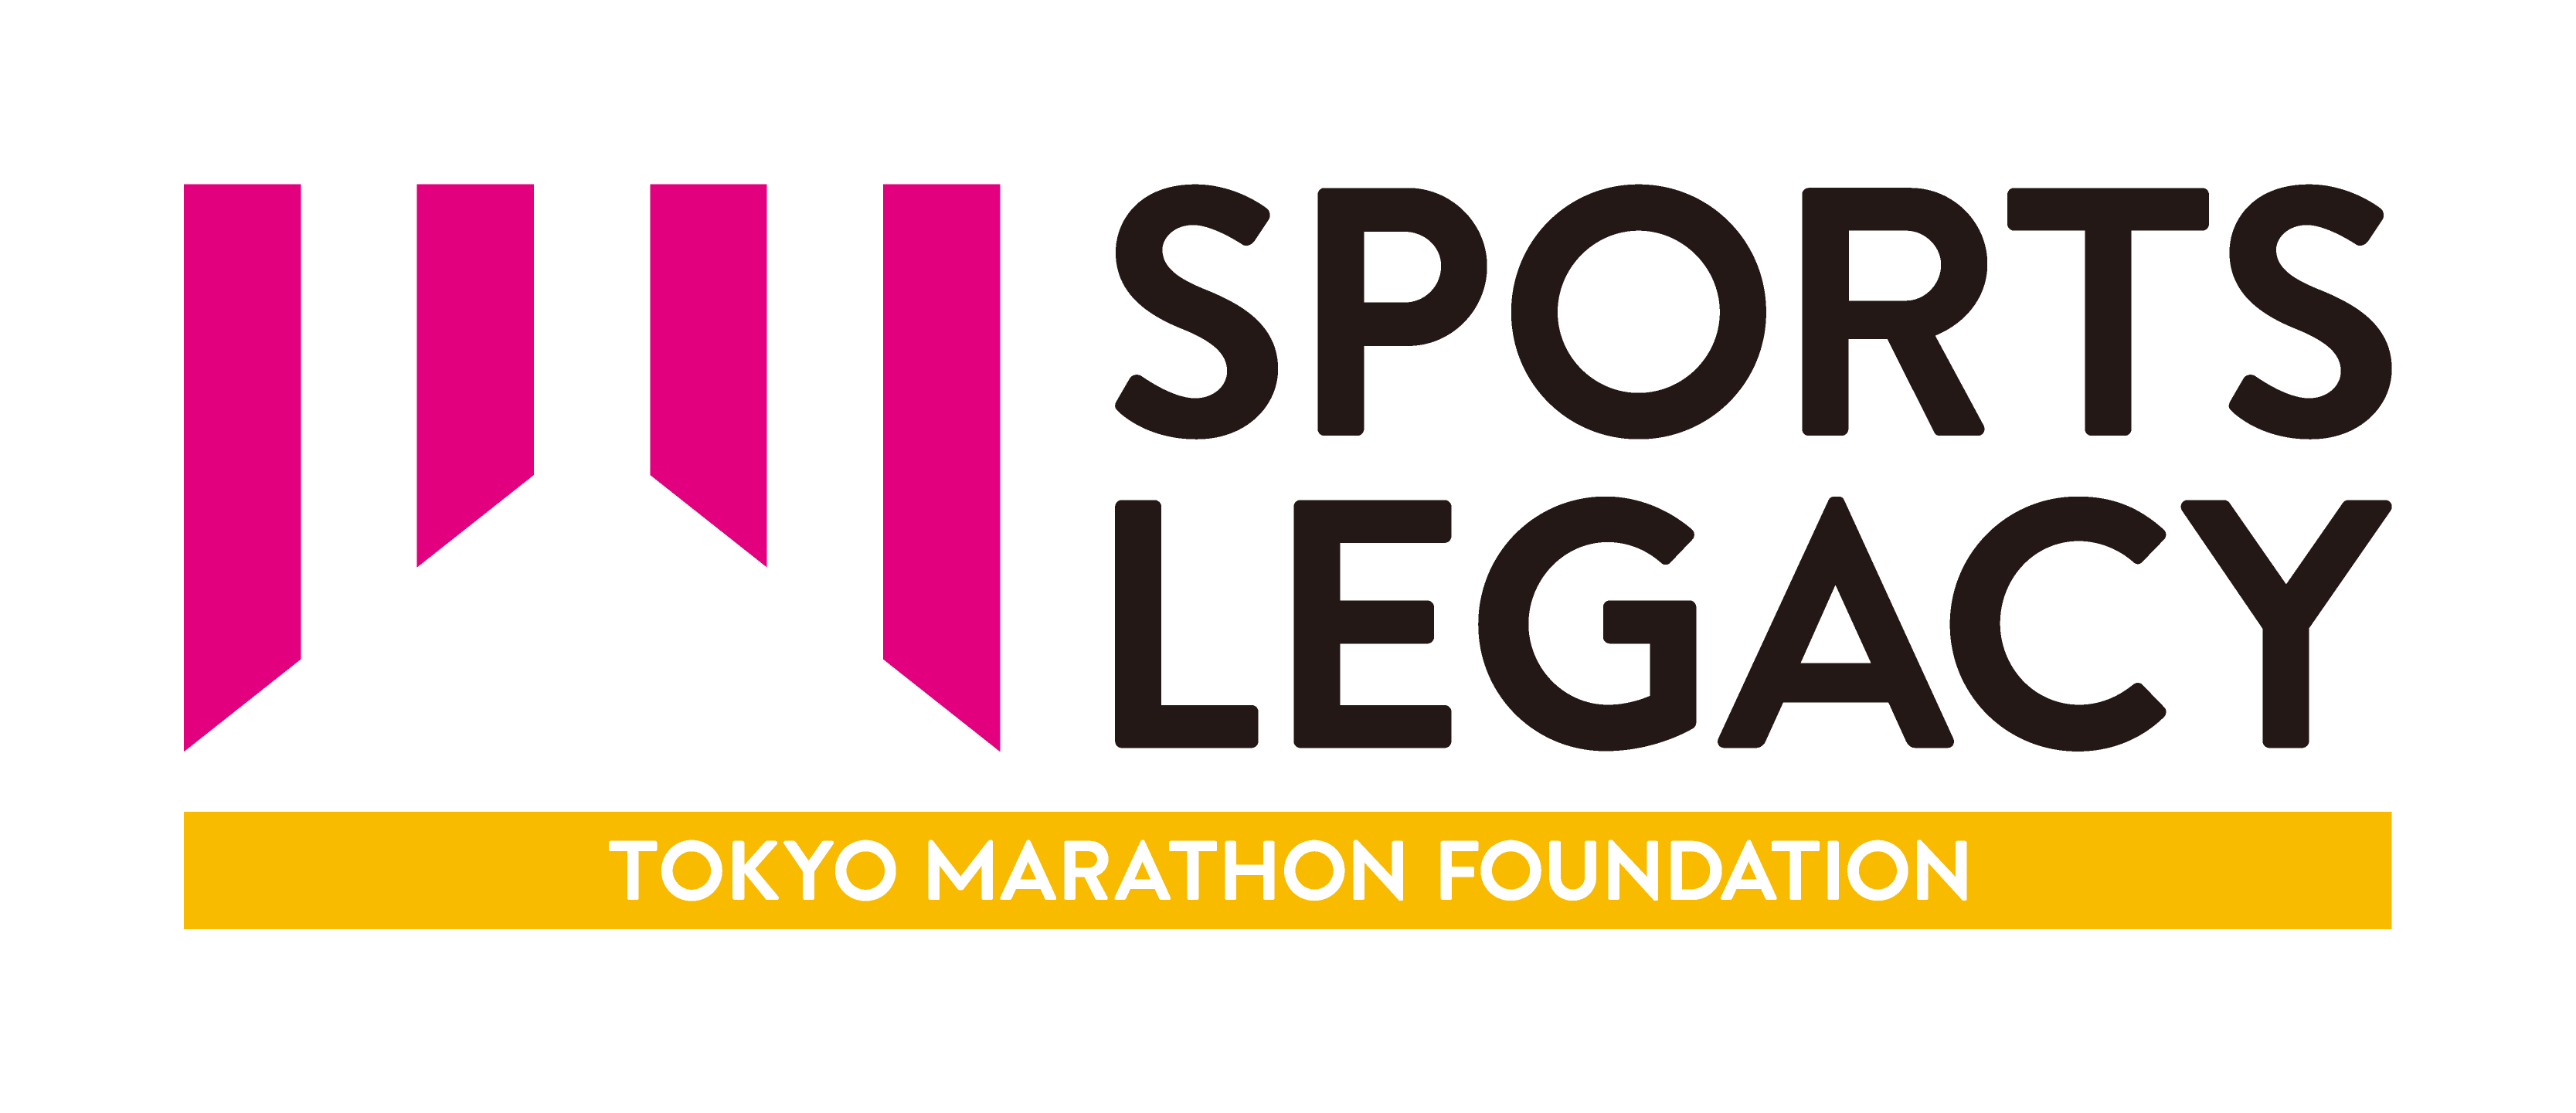 東京マラソン財団スポーツレガシーのロゴマーク